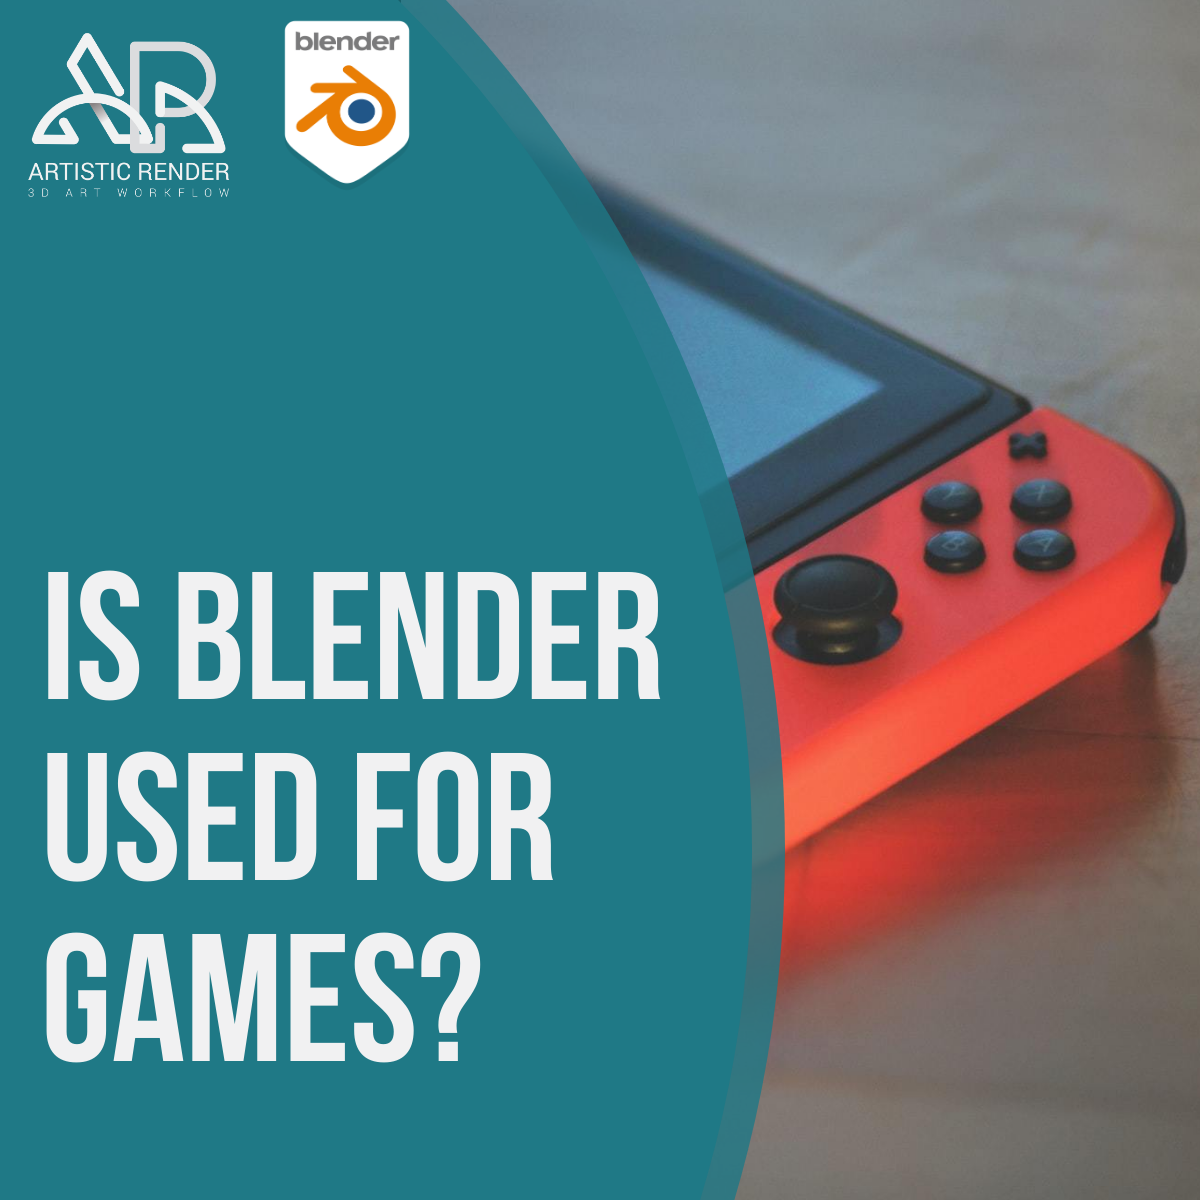 Is Blender for Games? -